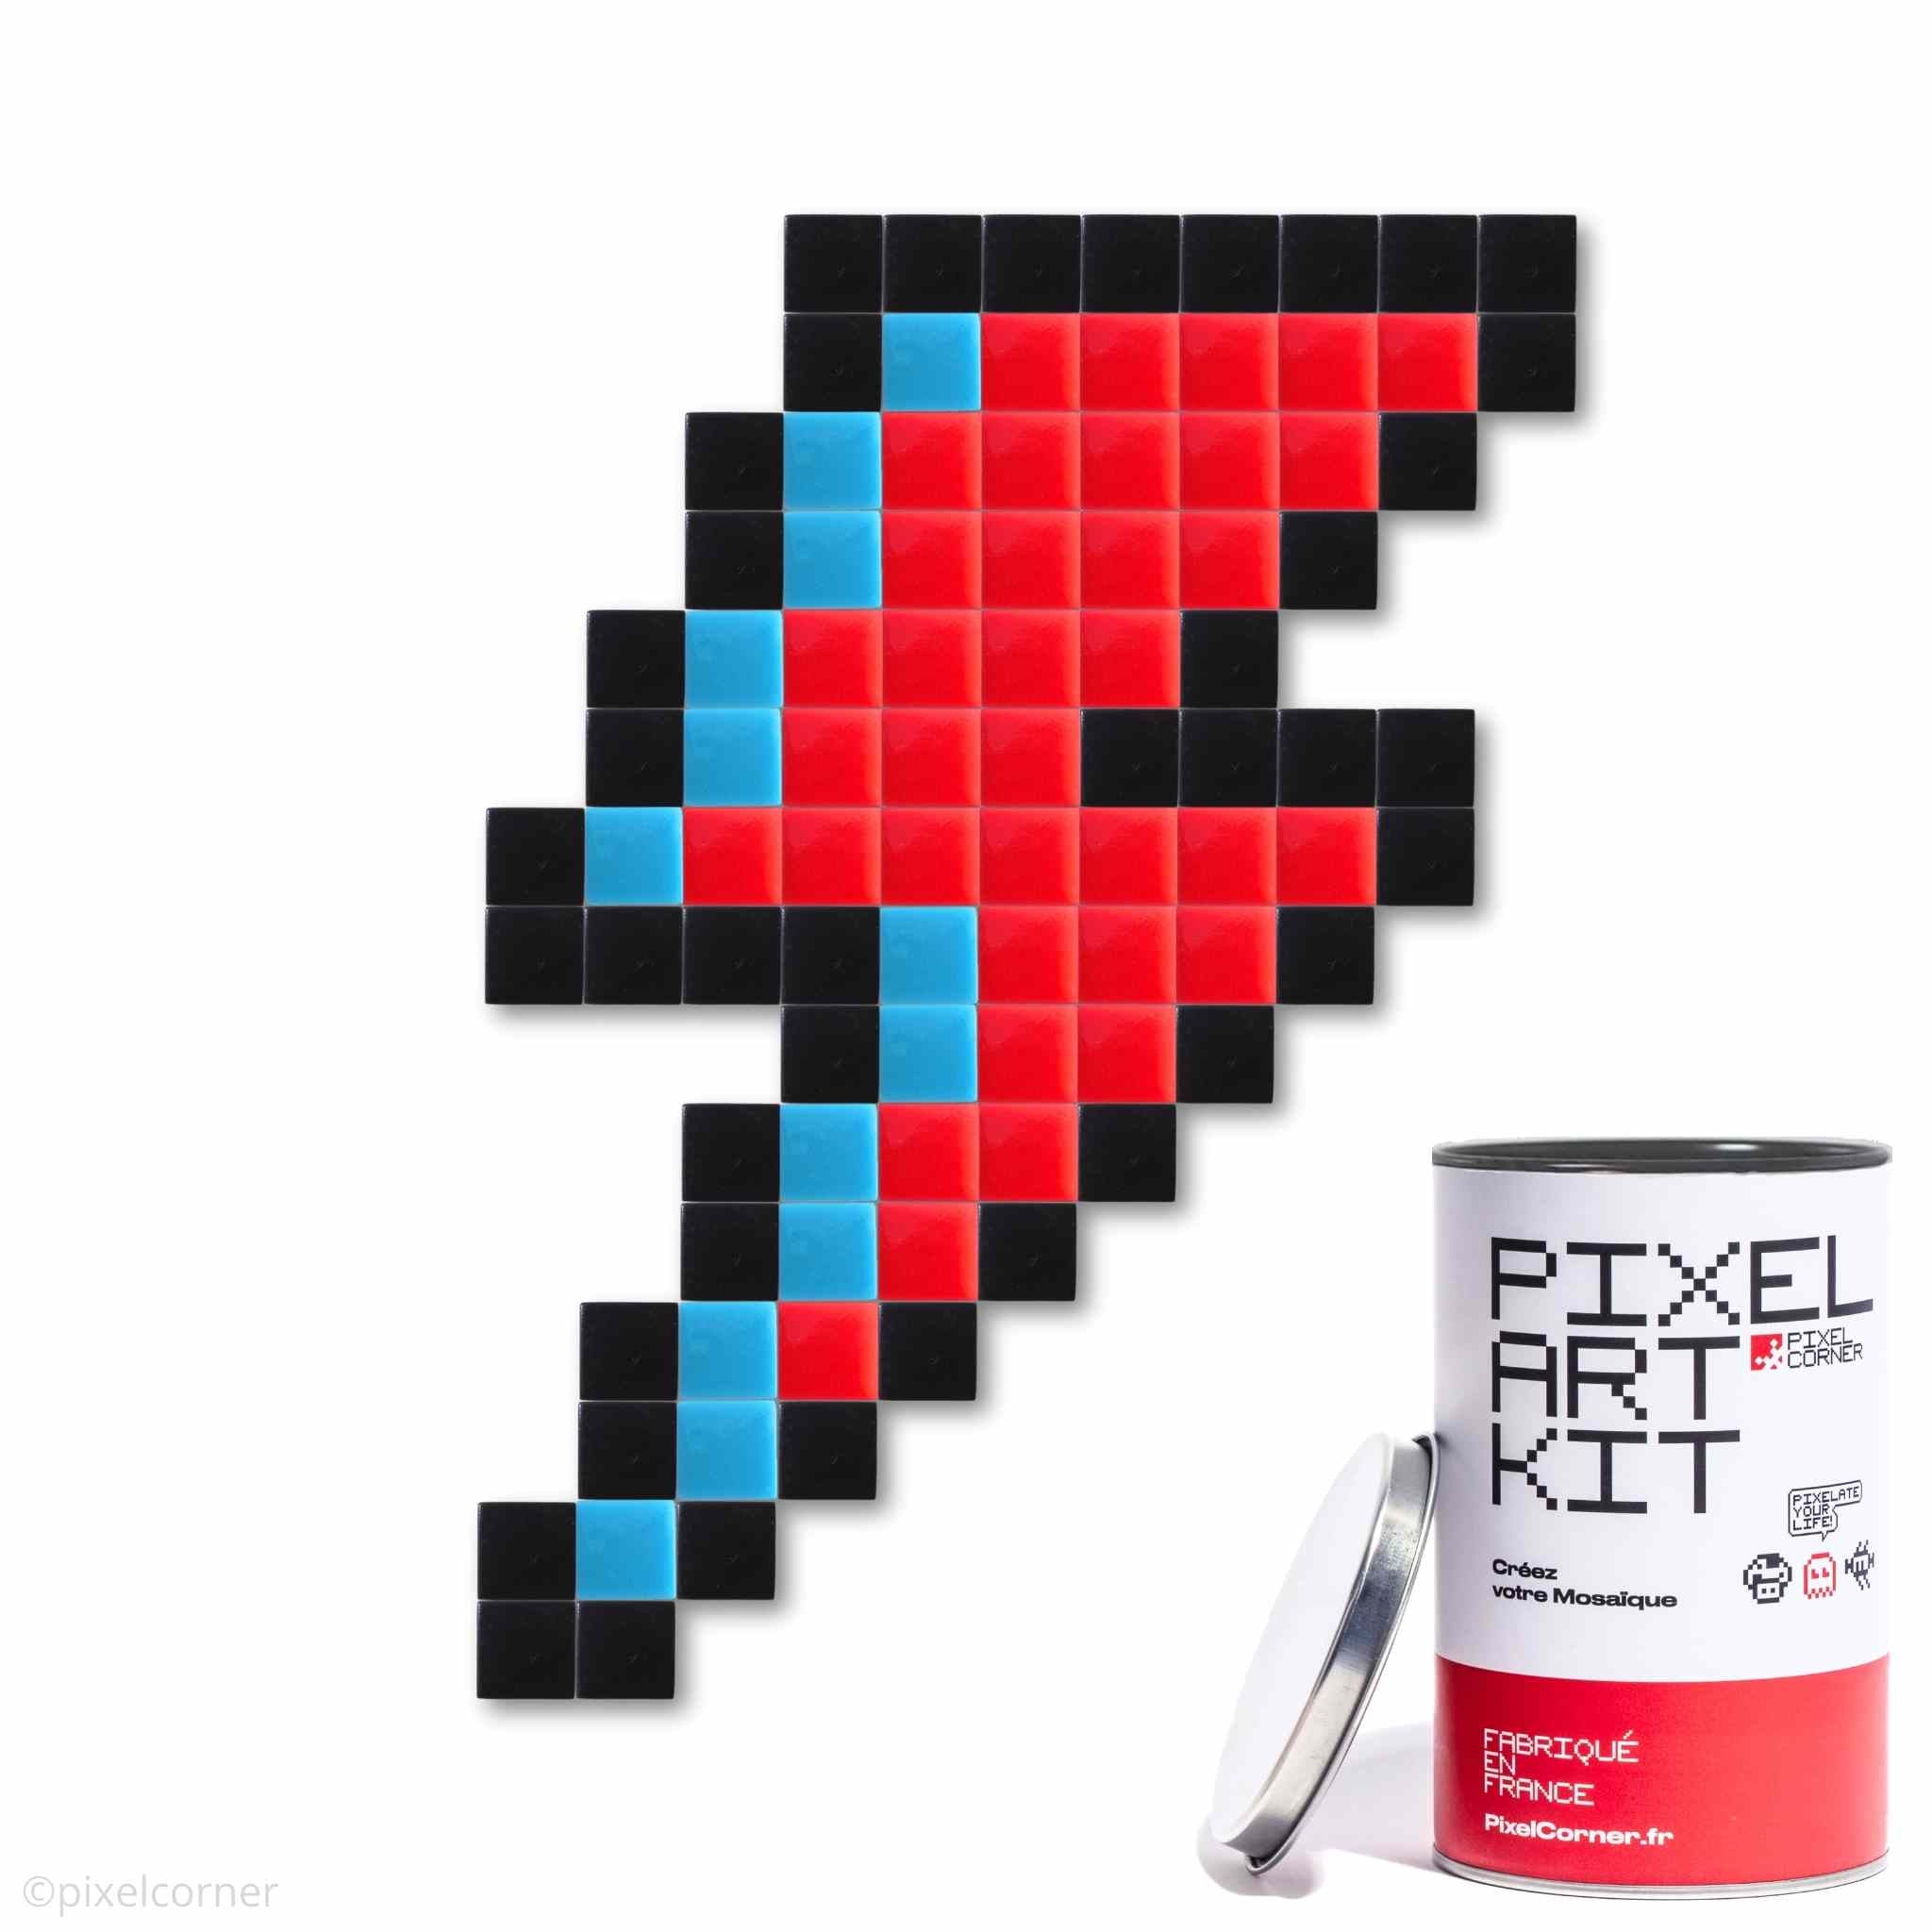 Pixel Art Kit "Bolt & Bowie" par Pixel Corner - Kits de loisirs créatifs